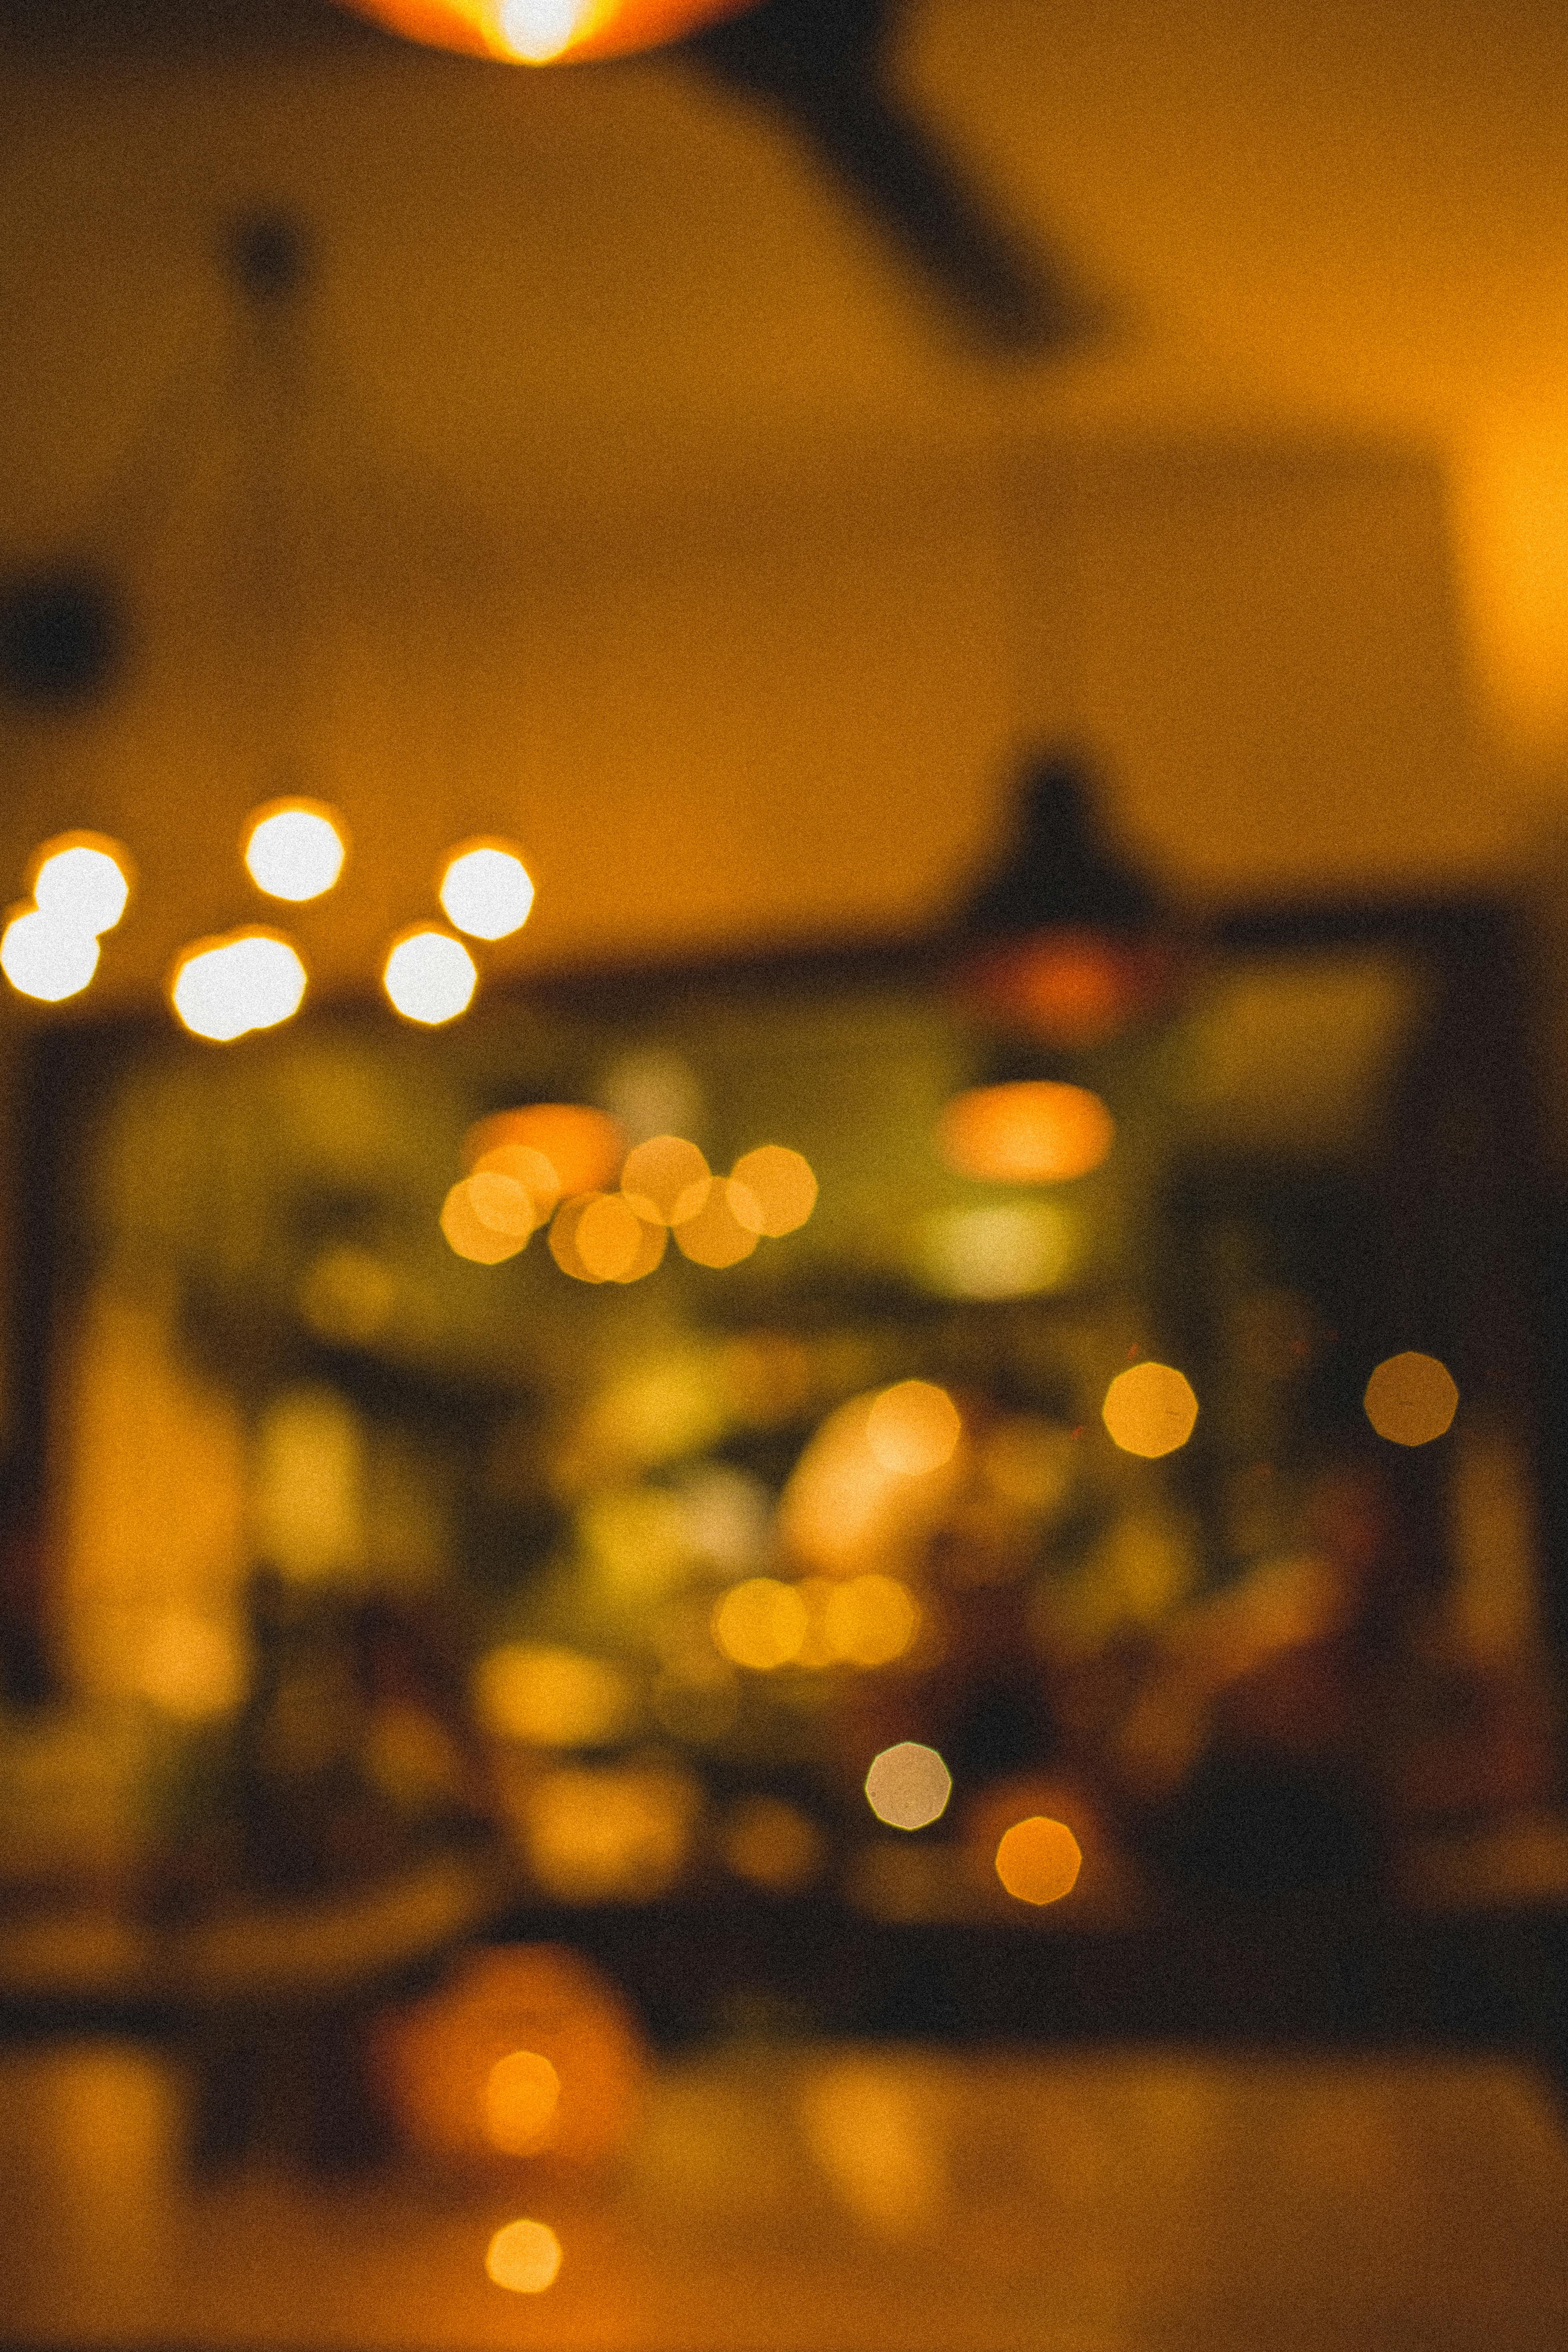 Innenraum Des Restaurants Mit Großen Lampen In Weißem Licht. Pendelleuchten  Isoliert. Kristalllampe. Lizenzfreie Fotos, Bilder und Stock Fotografie.  Image 135225329.